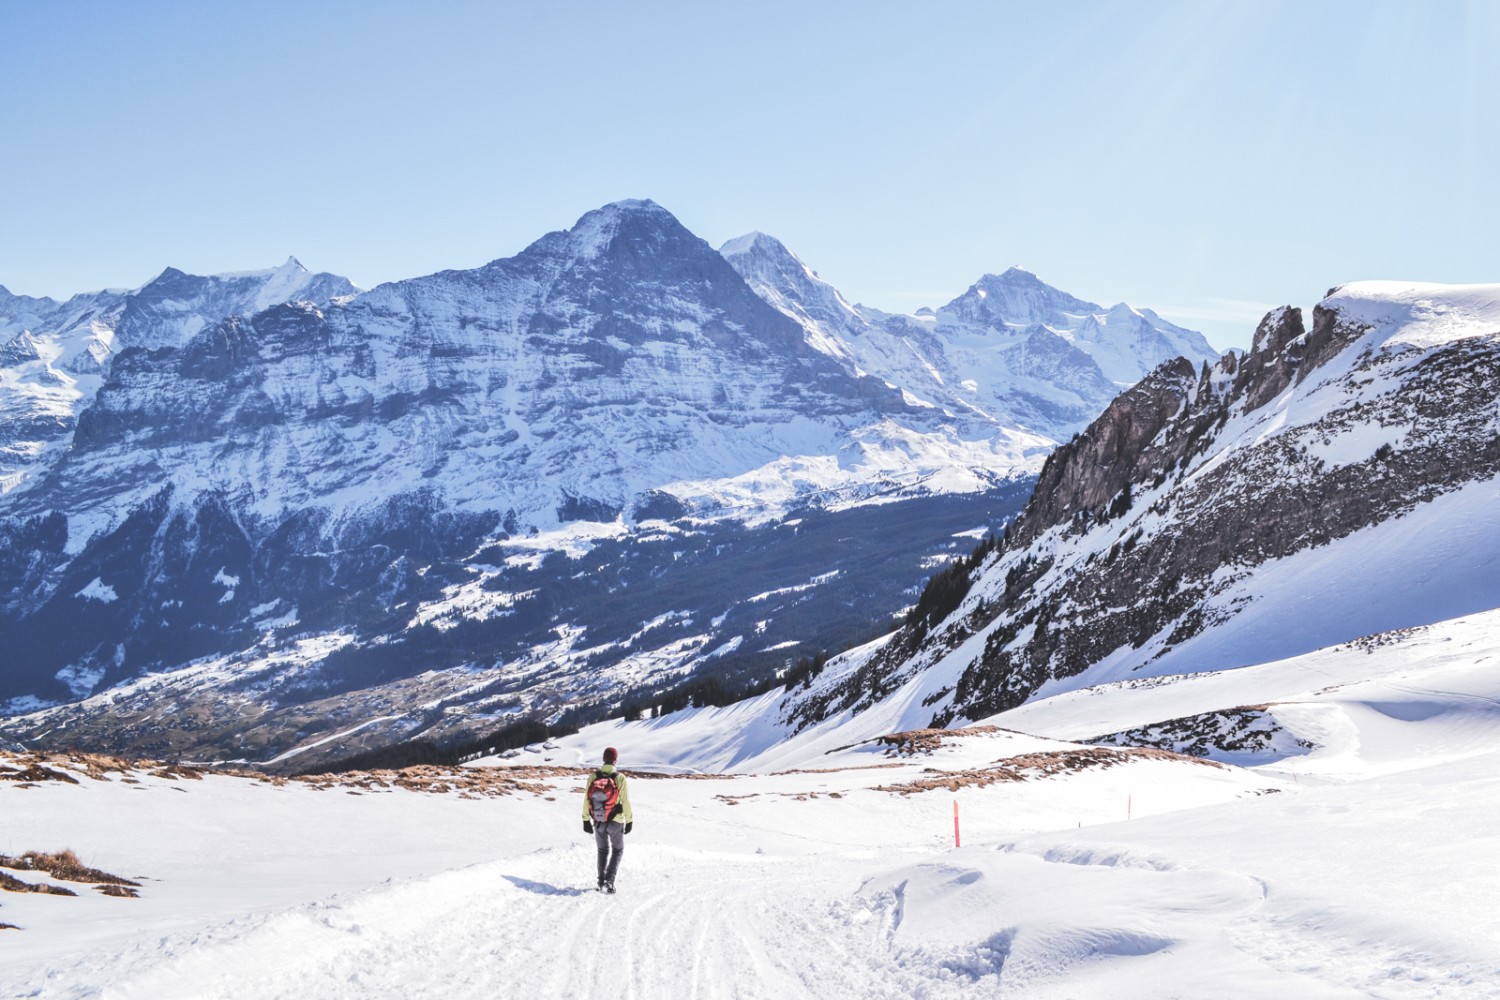 Schöne Aussicht auf das berühmte Dreigestirn der Berner Alpen Eiger, Mönch und Jungfrau. Bild: Sabine Joss